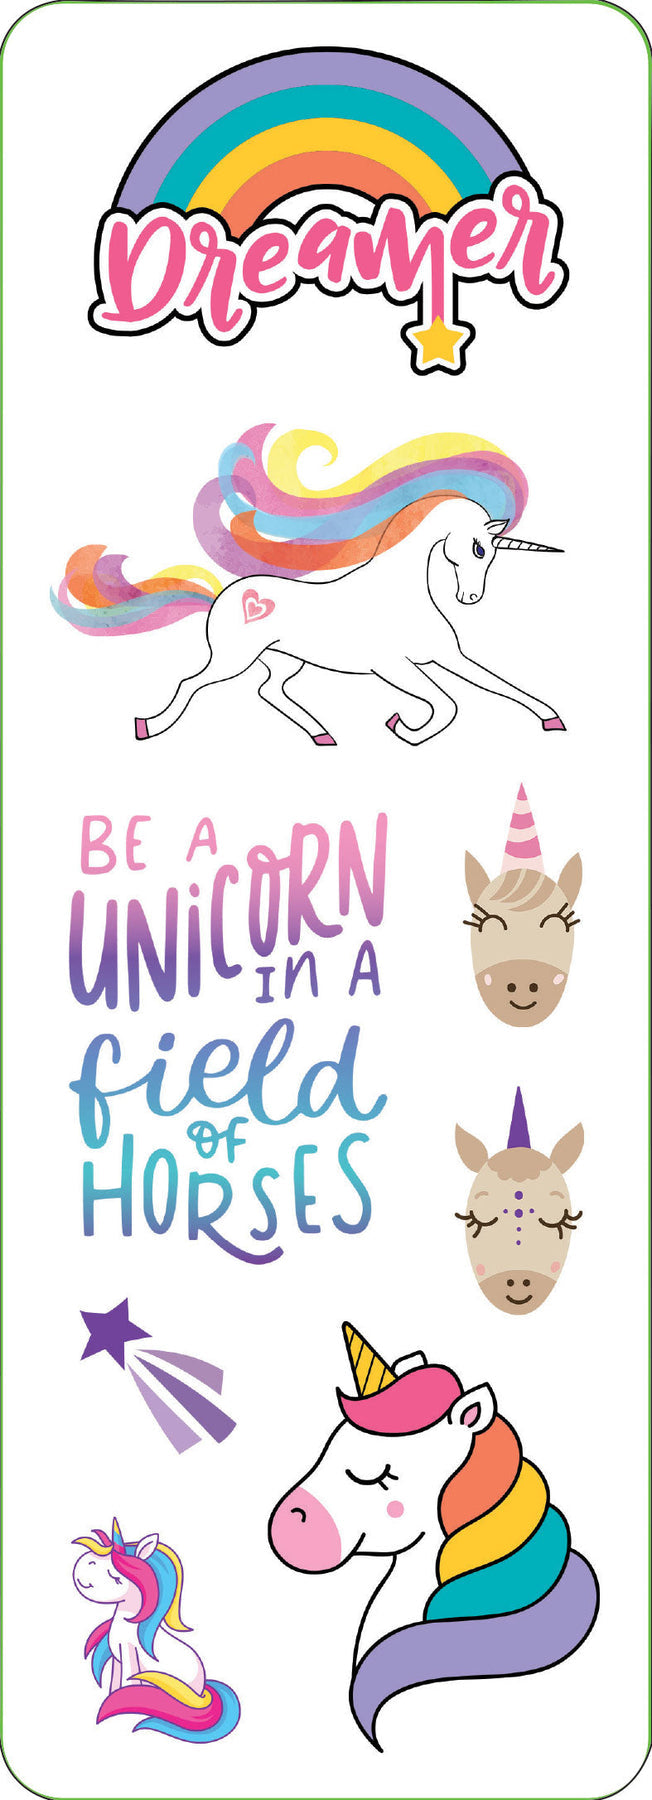 Unicorns Sticker Set